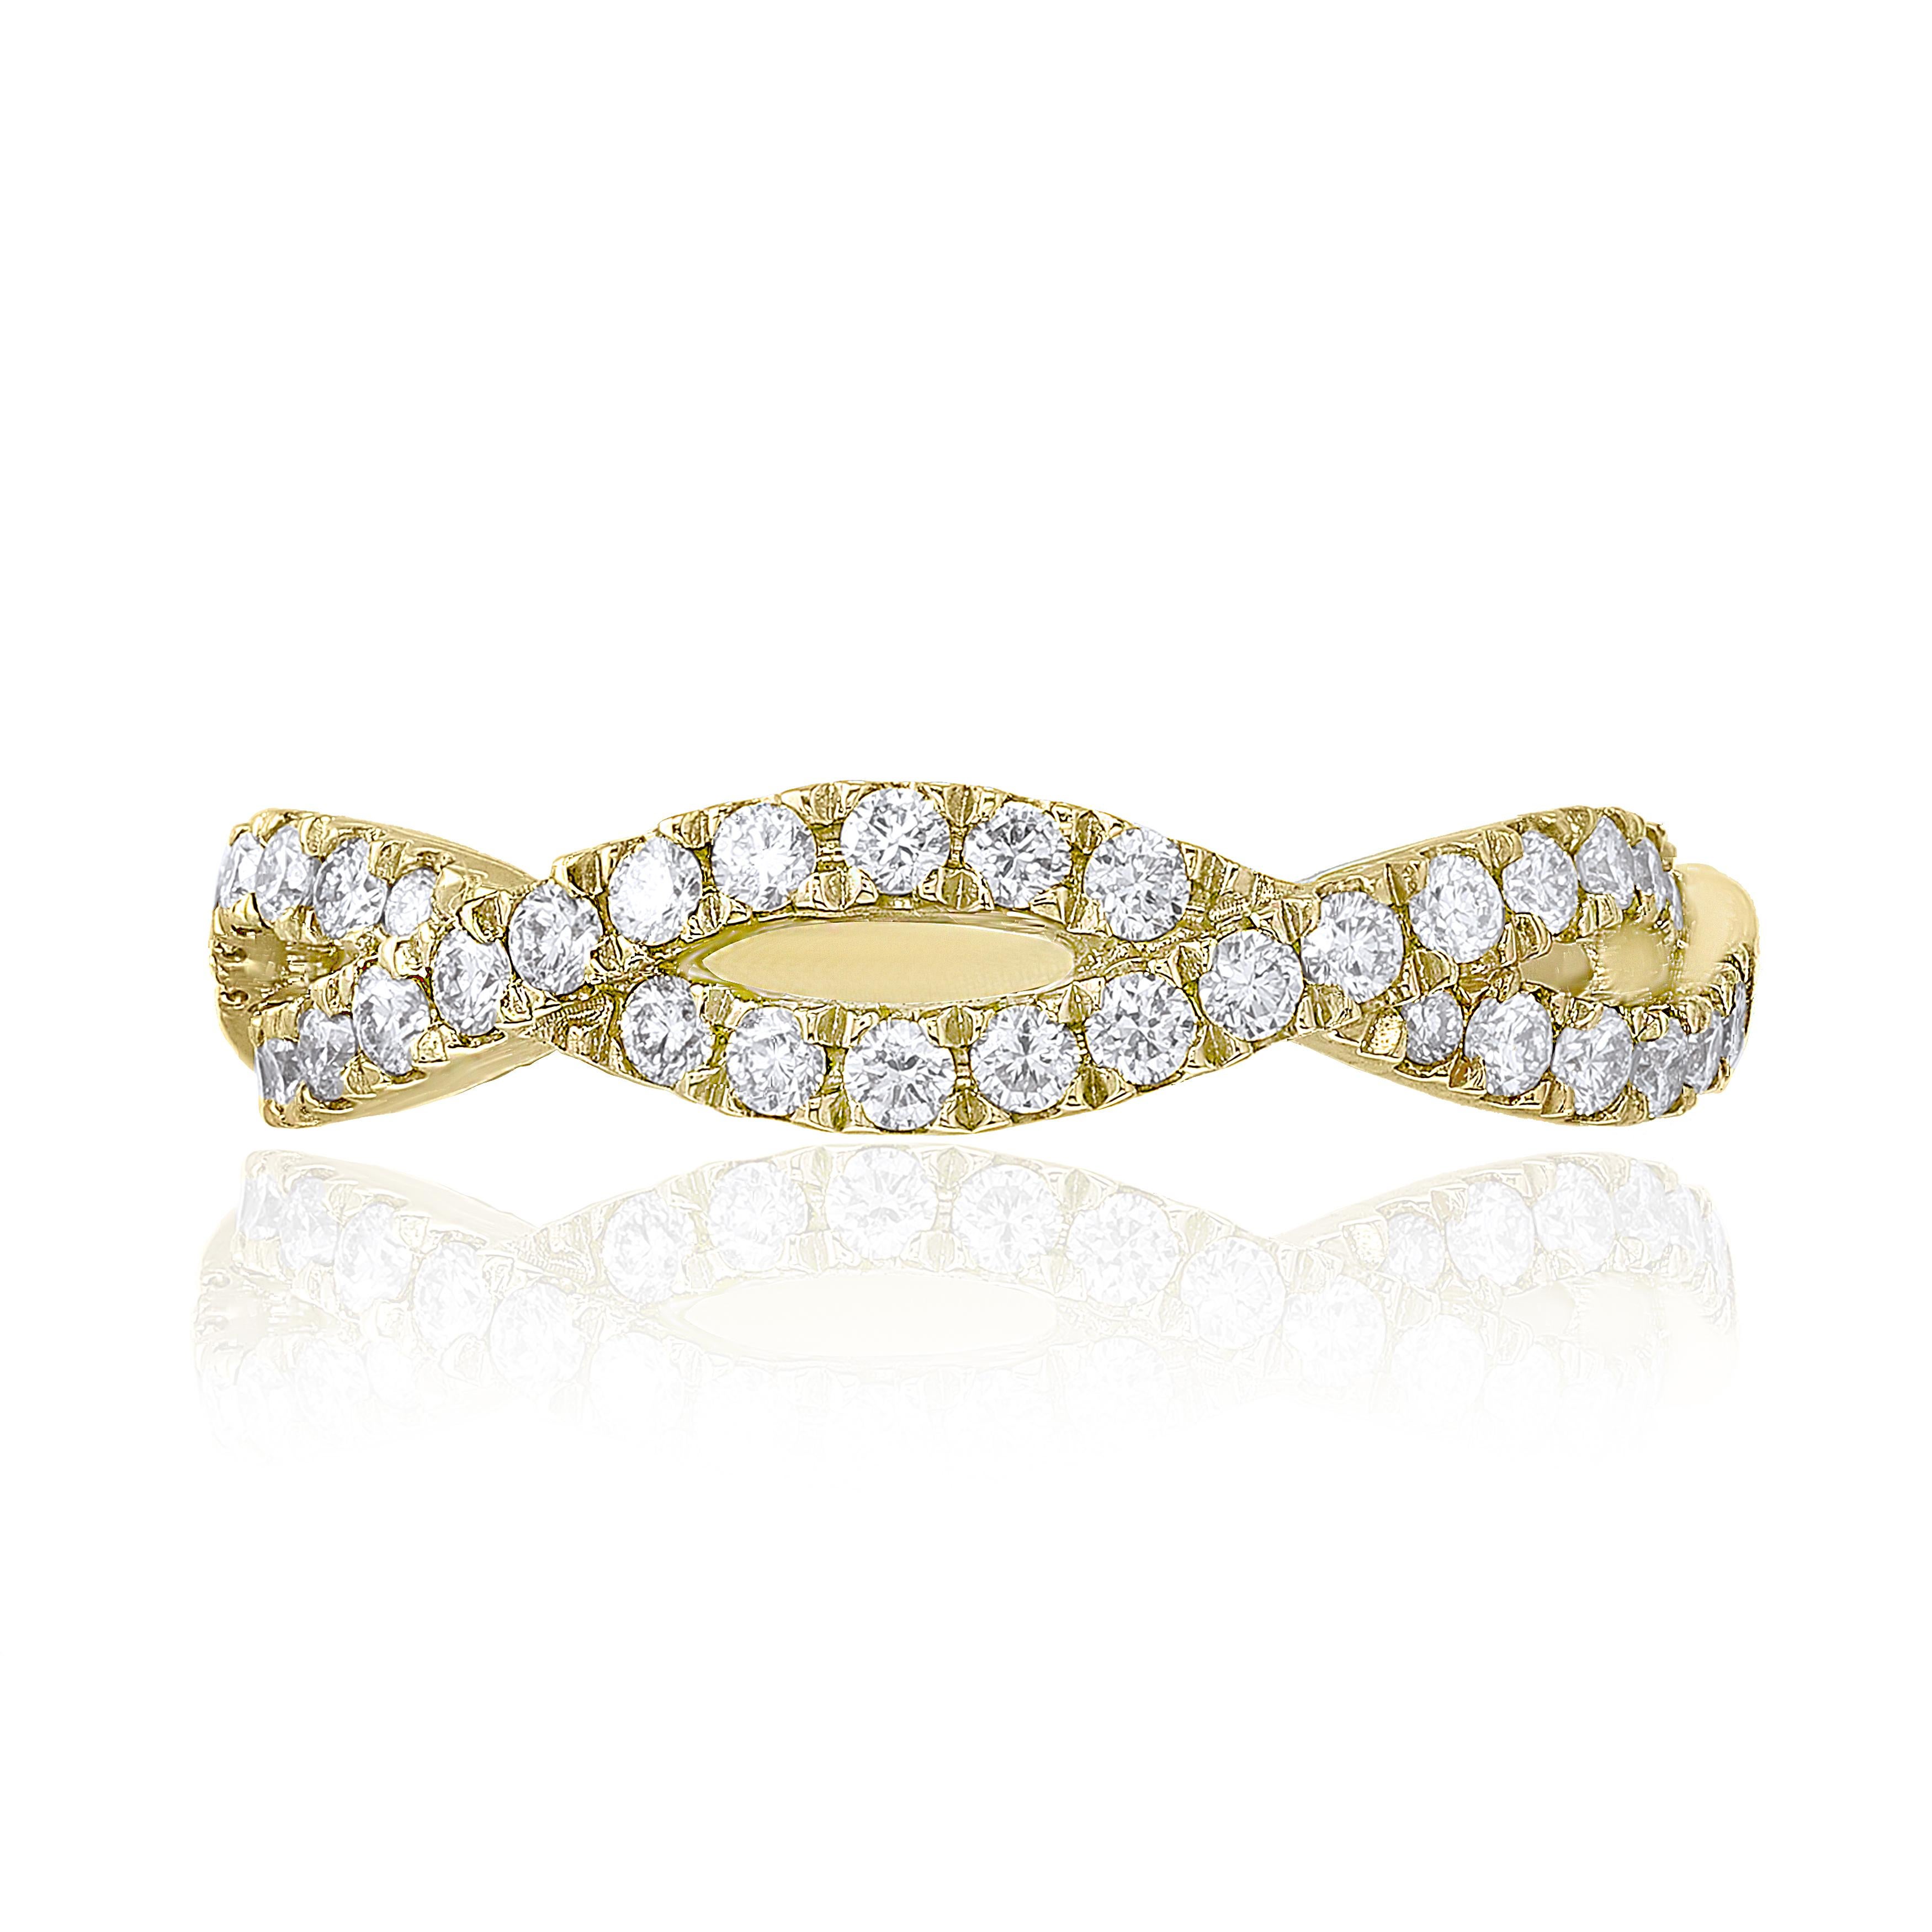 Une version unique des alliances classiques en diamant. Les diamants ronds de 0,21 carat sont sertis dans de l'or jaune 18 carats. Deux lignes de diamants étincelants s'entrelacent pour symboliser l'amour infini entre deux personnes. 
Taille